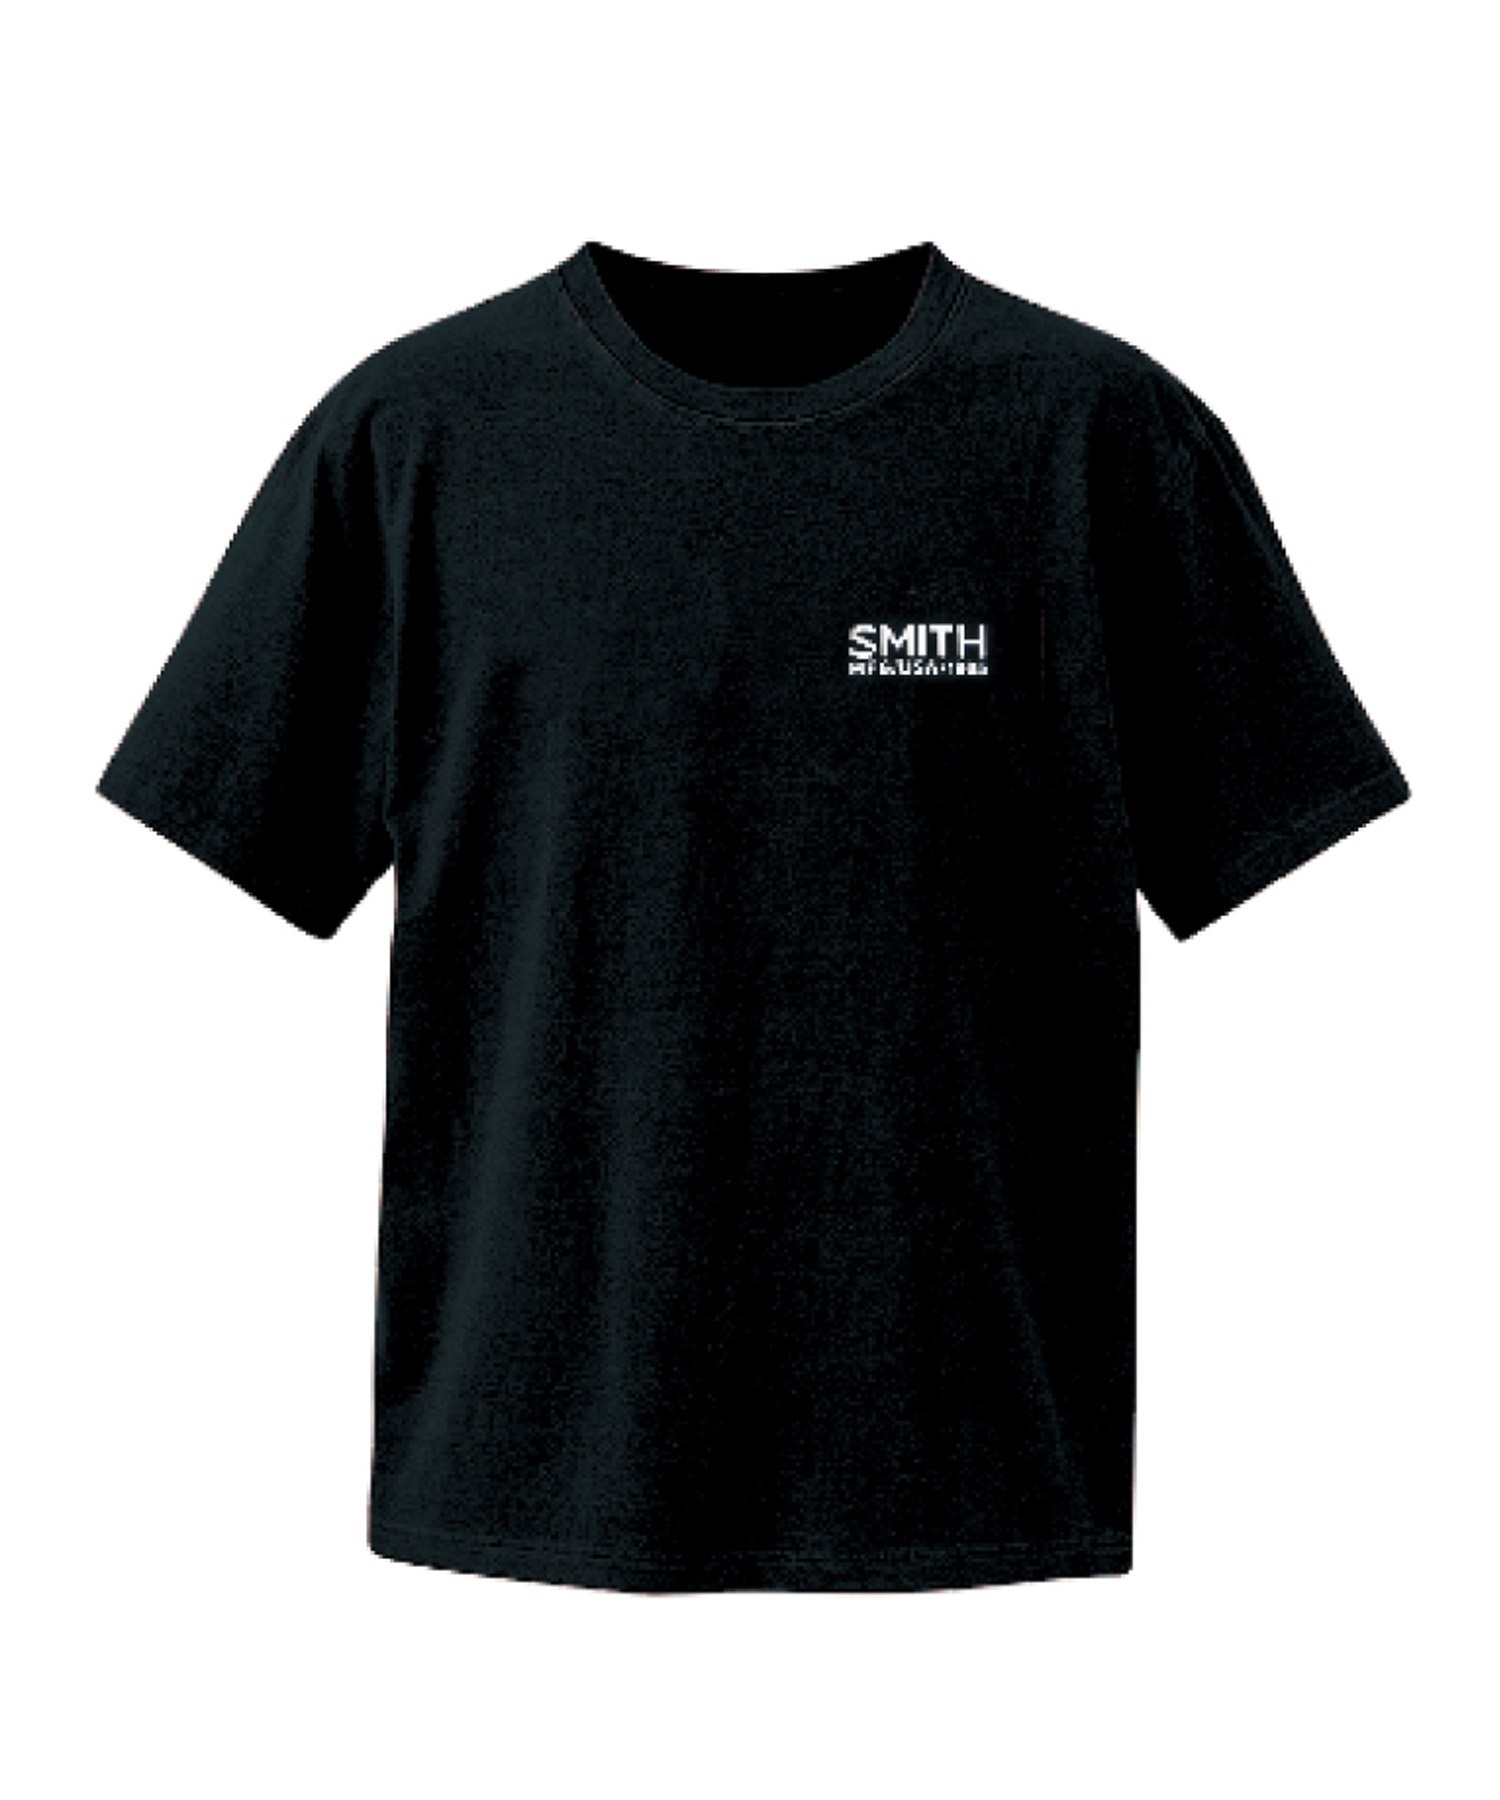 スノーボード ウェア インナーウェア インナー ユニセックス SMITH スミス ISSUE DRY 半袖 Tシャツ 23-24モデル ムラサキスポーツ KK K15(BLACK-S)